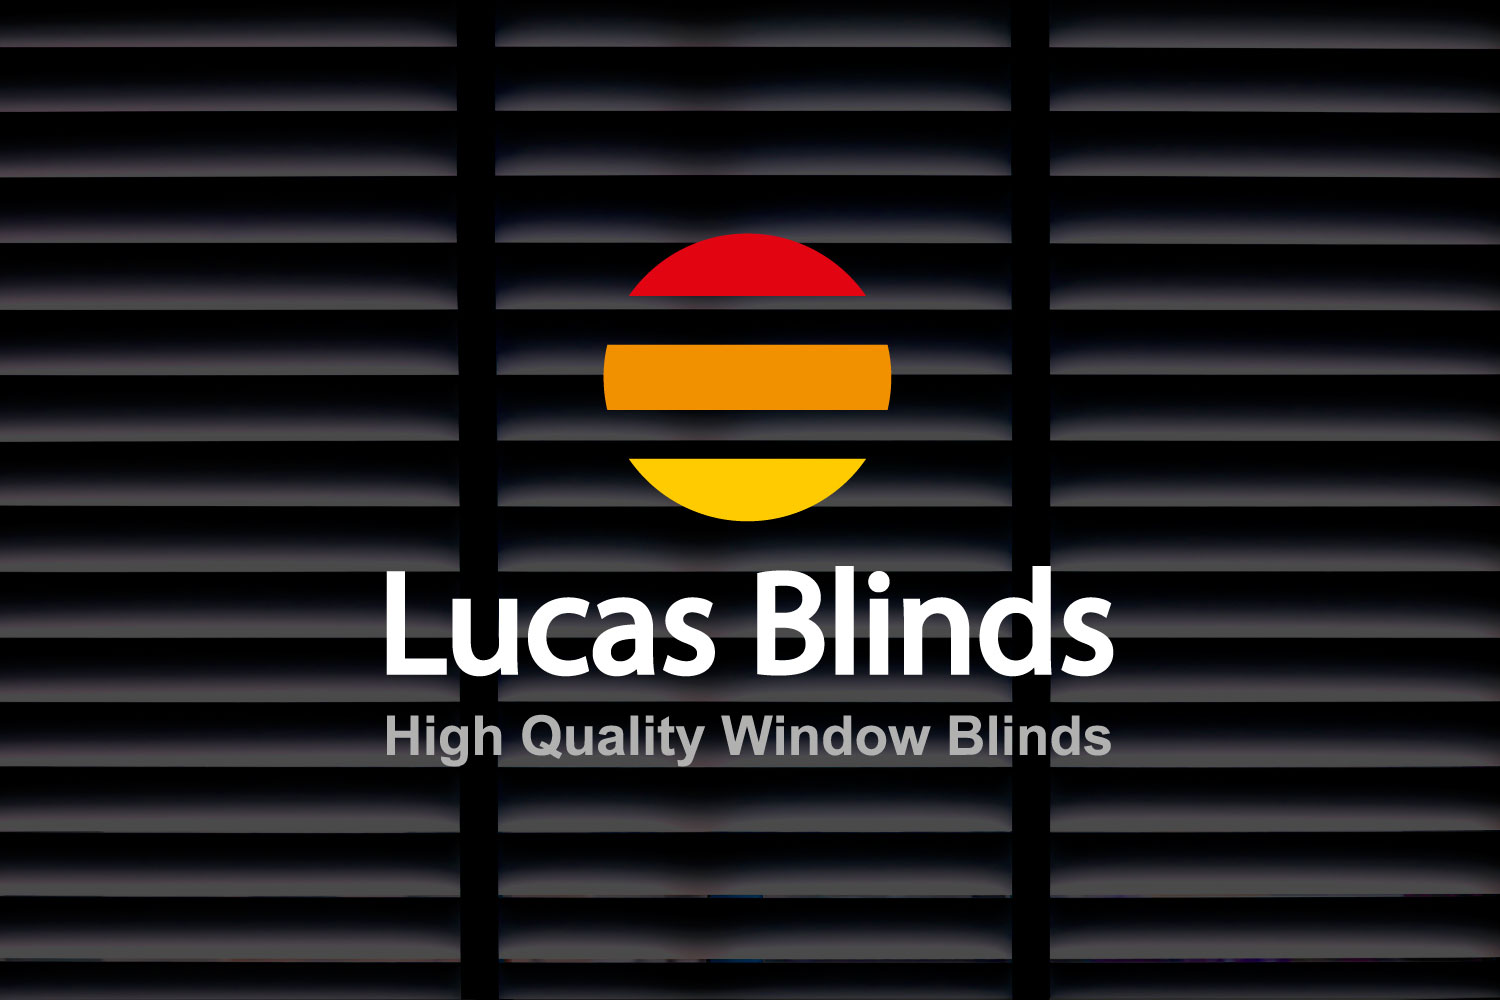 Projektowanie logo Lucas blinds